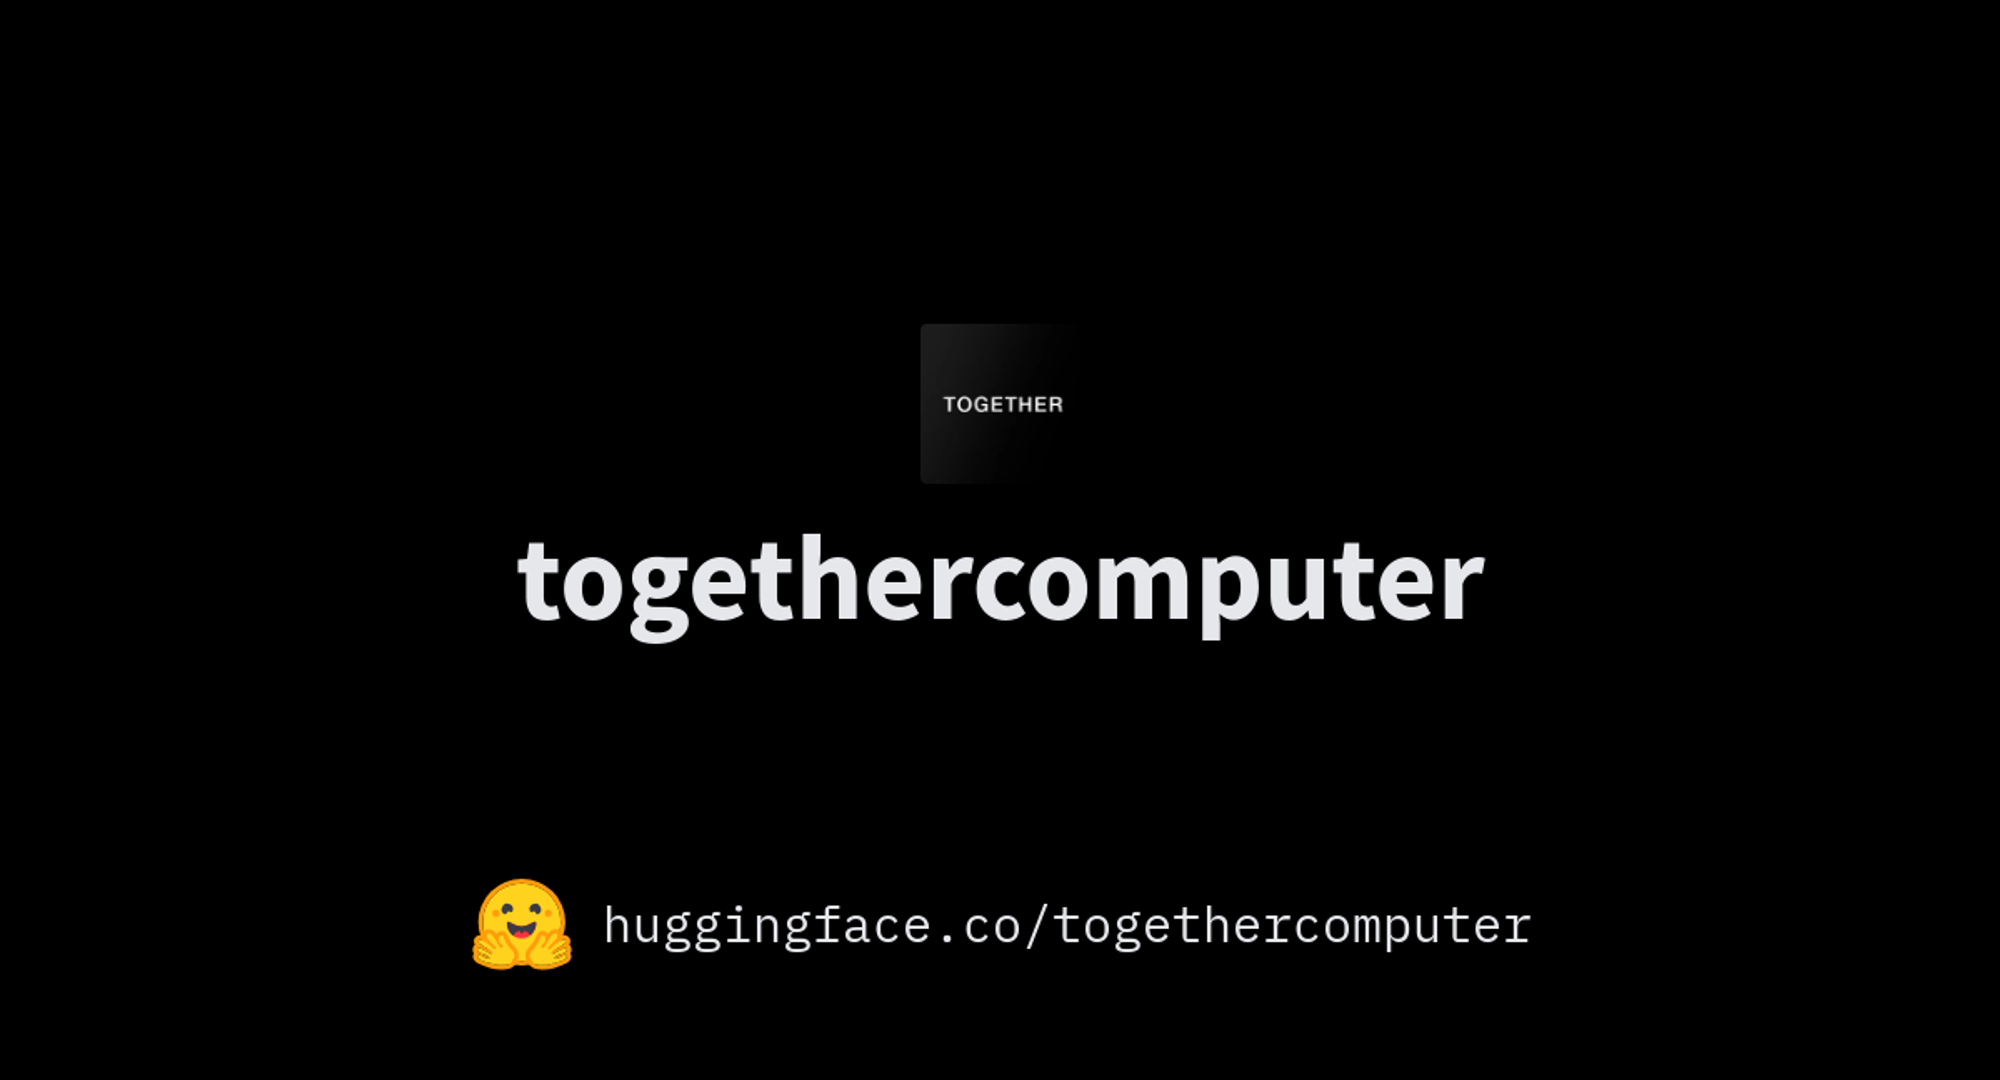 togethercomputer (Together)